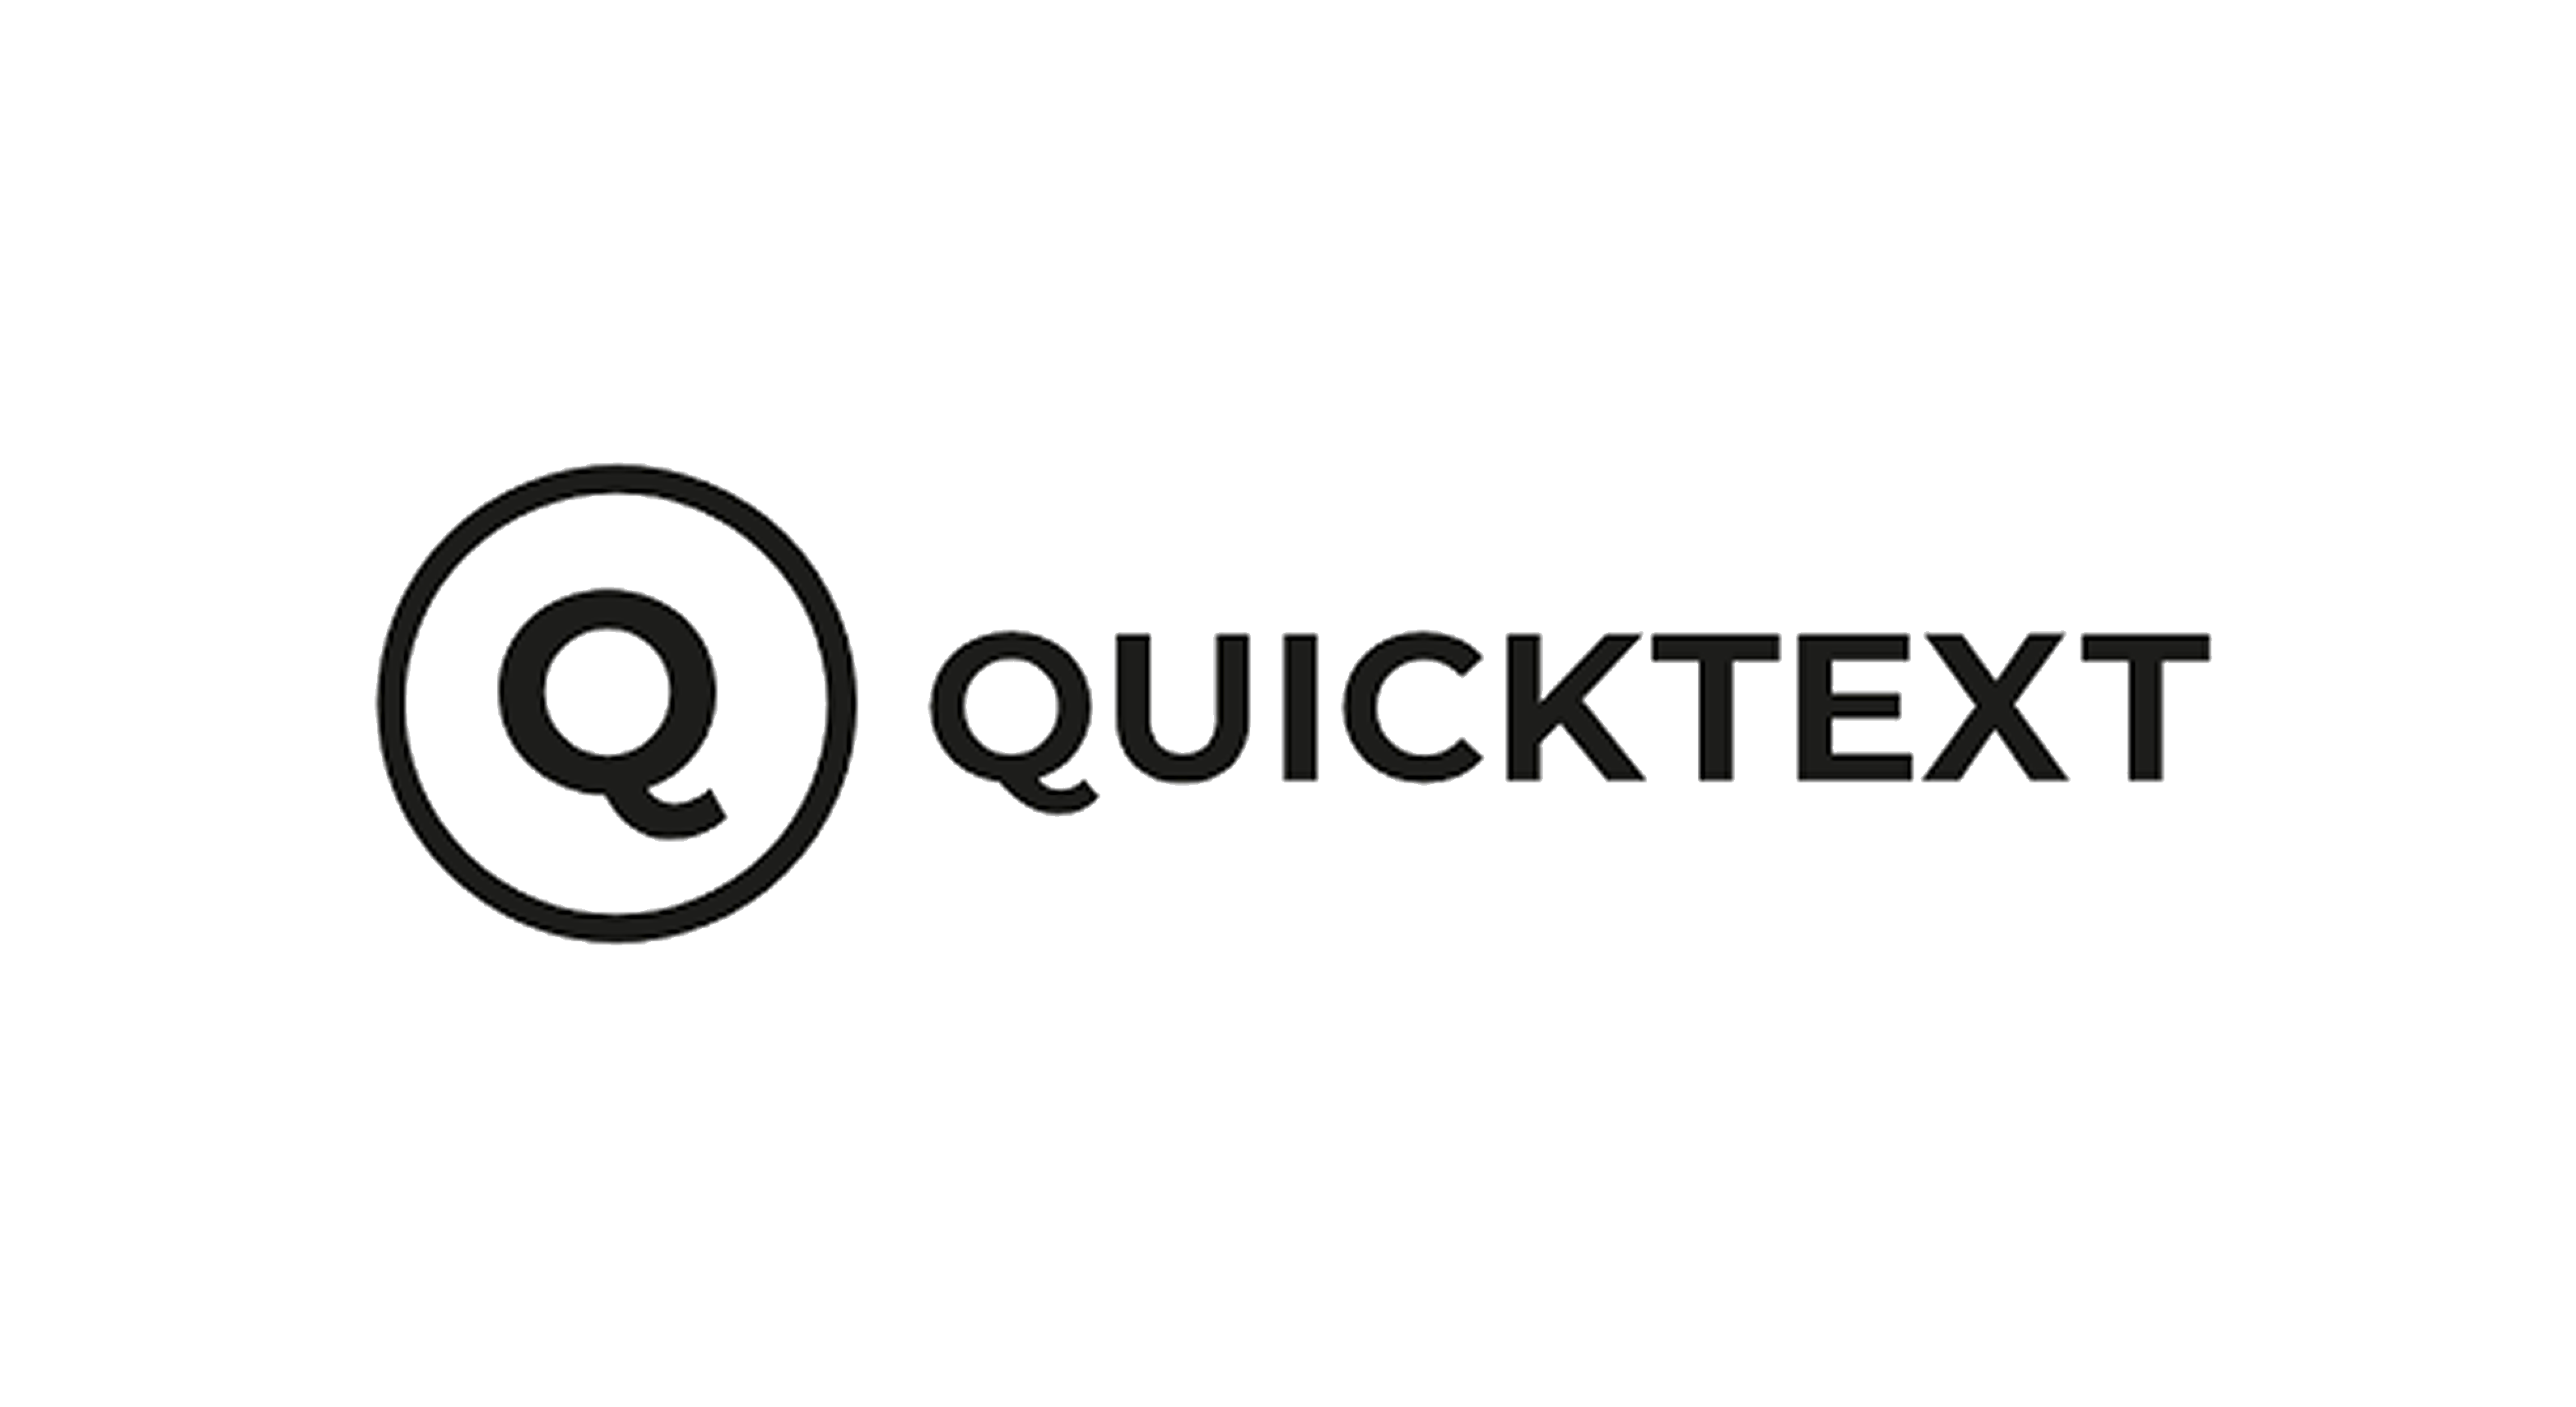 Quicktext